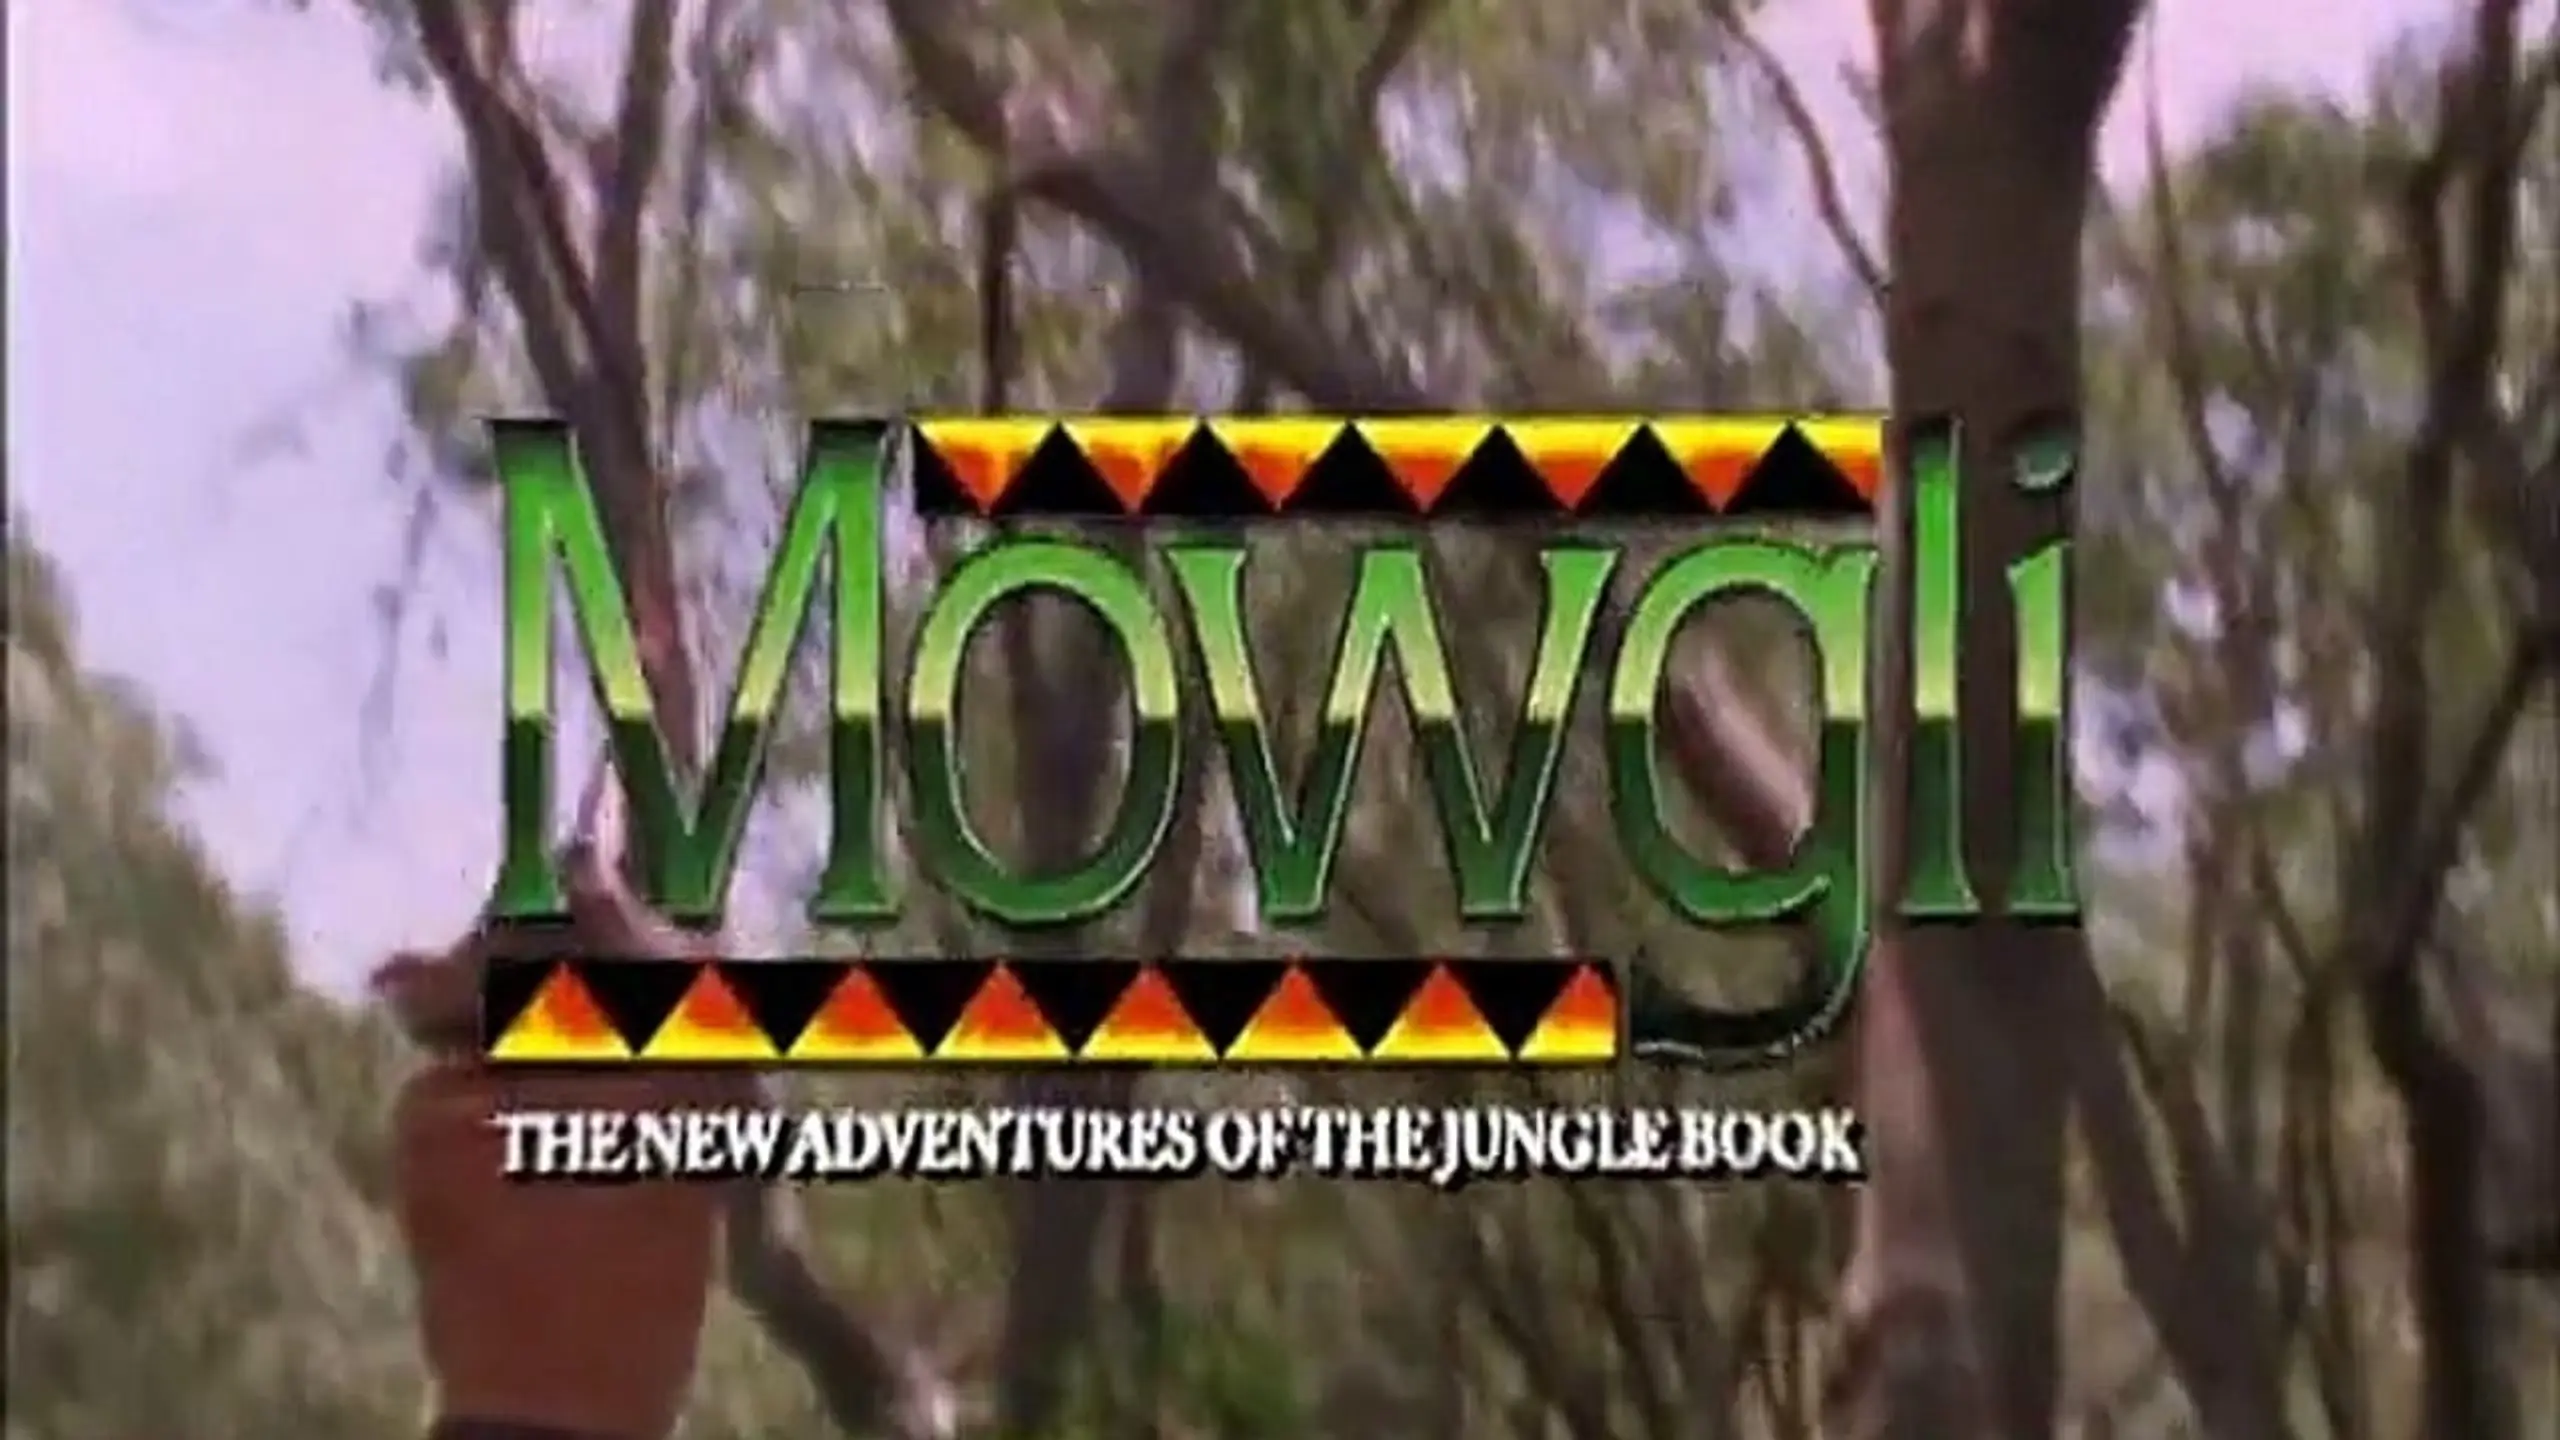 Mowgli – Neue Abenteuer aus dem Dschungel